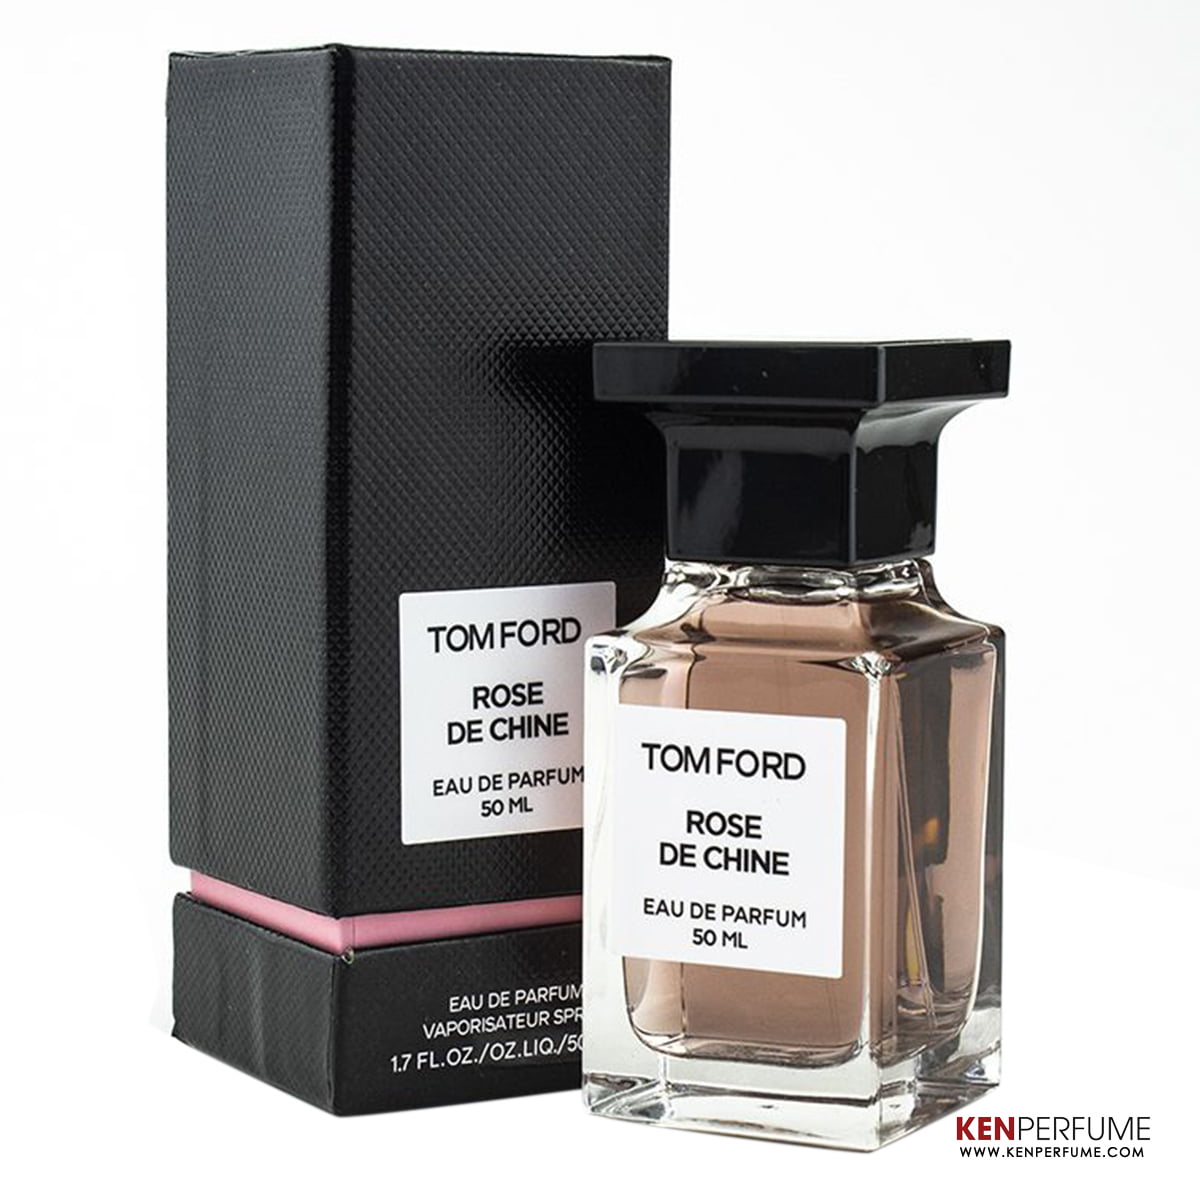 Tom Ford 1.7 oz. Rose de Chine Eau de Parfum